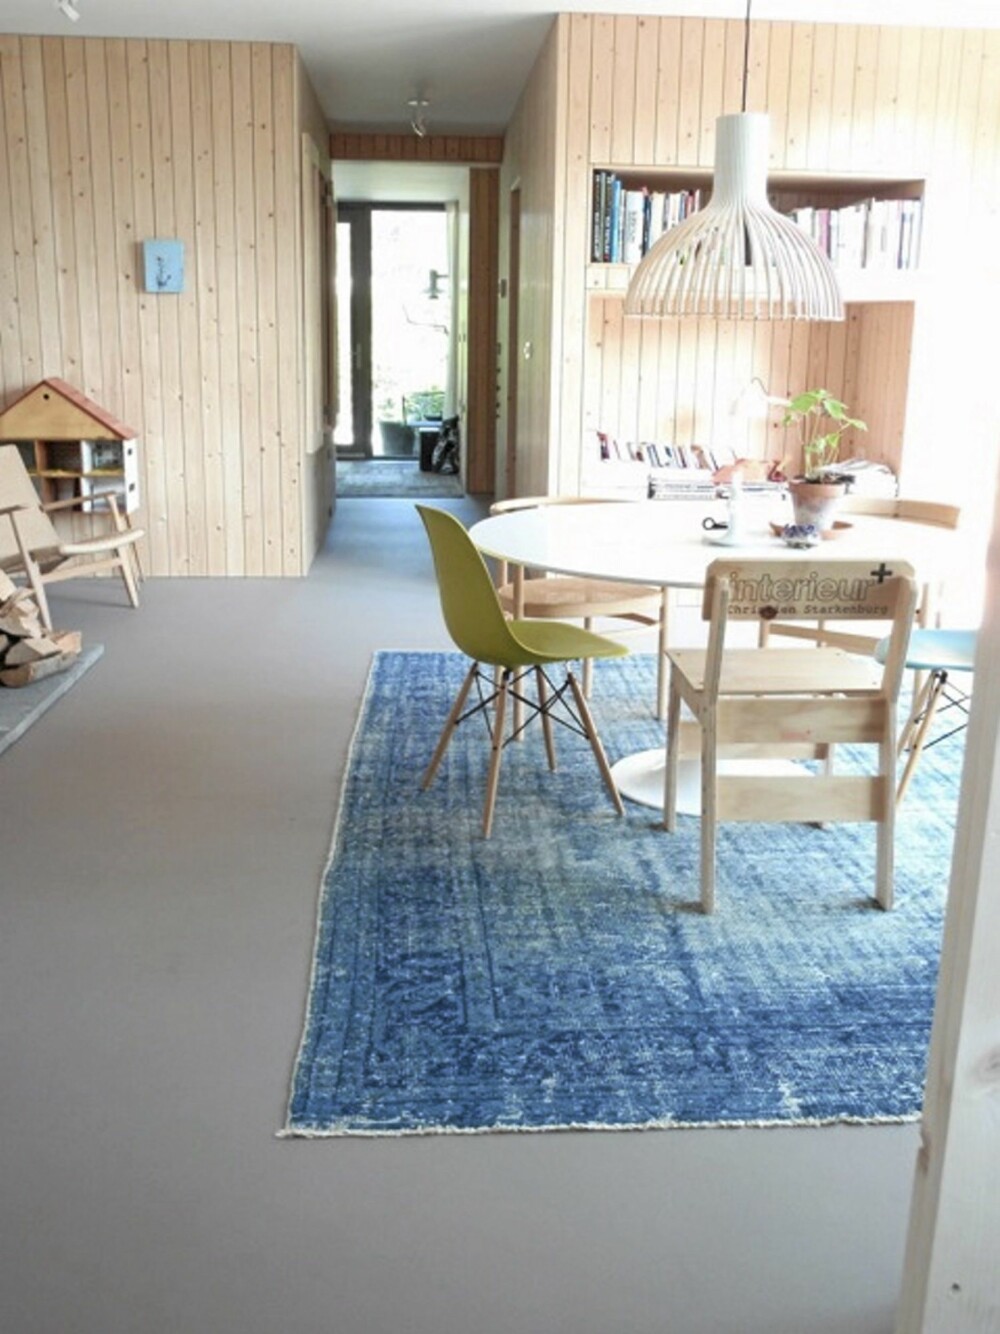 SKANDINAVISK STIL: Rene linjer, naturmaterialer og nøktern inrredning kjennetegner en skandinavisk stil og boligen til Starkenburg